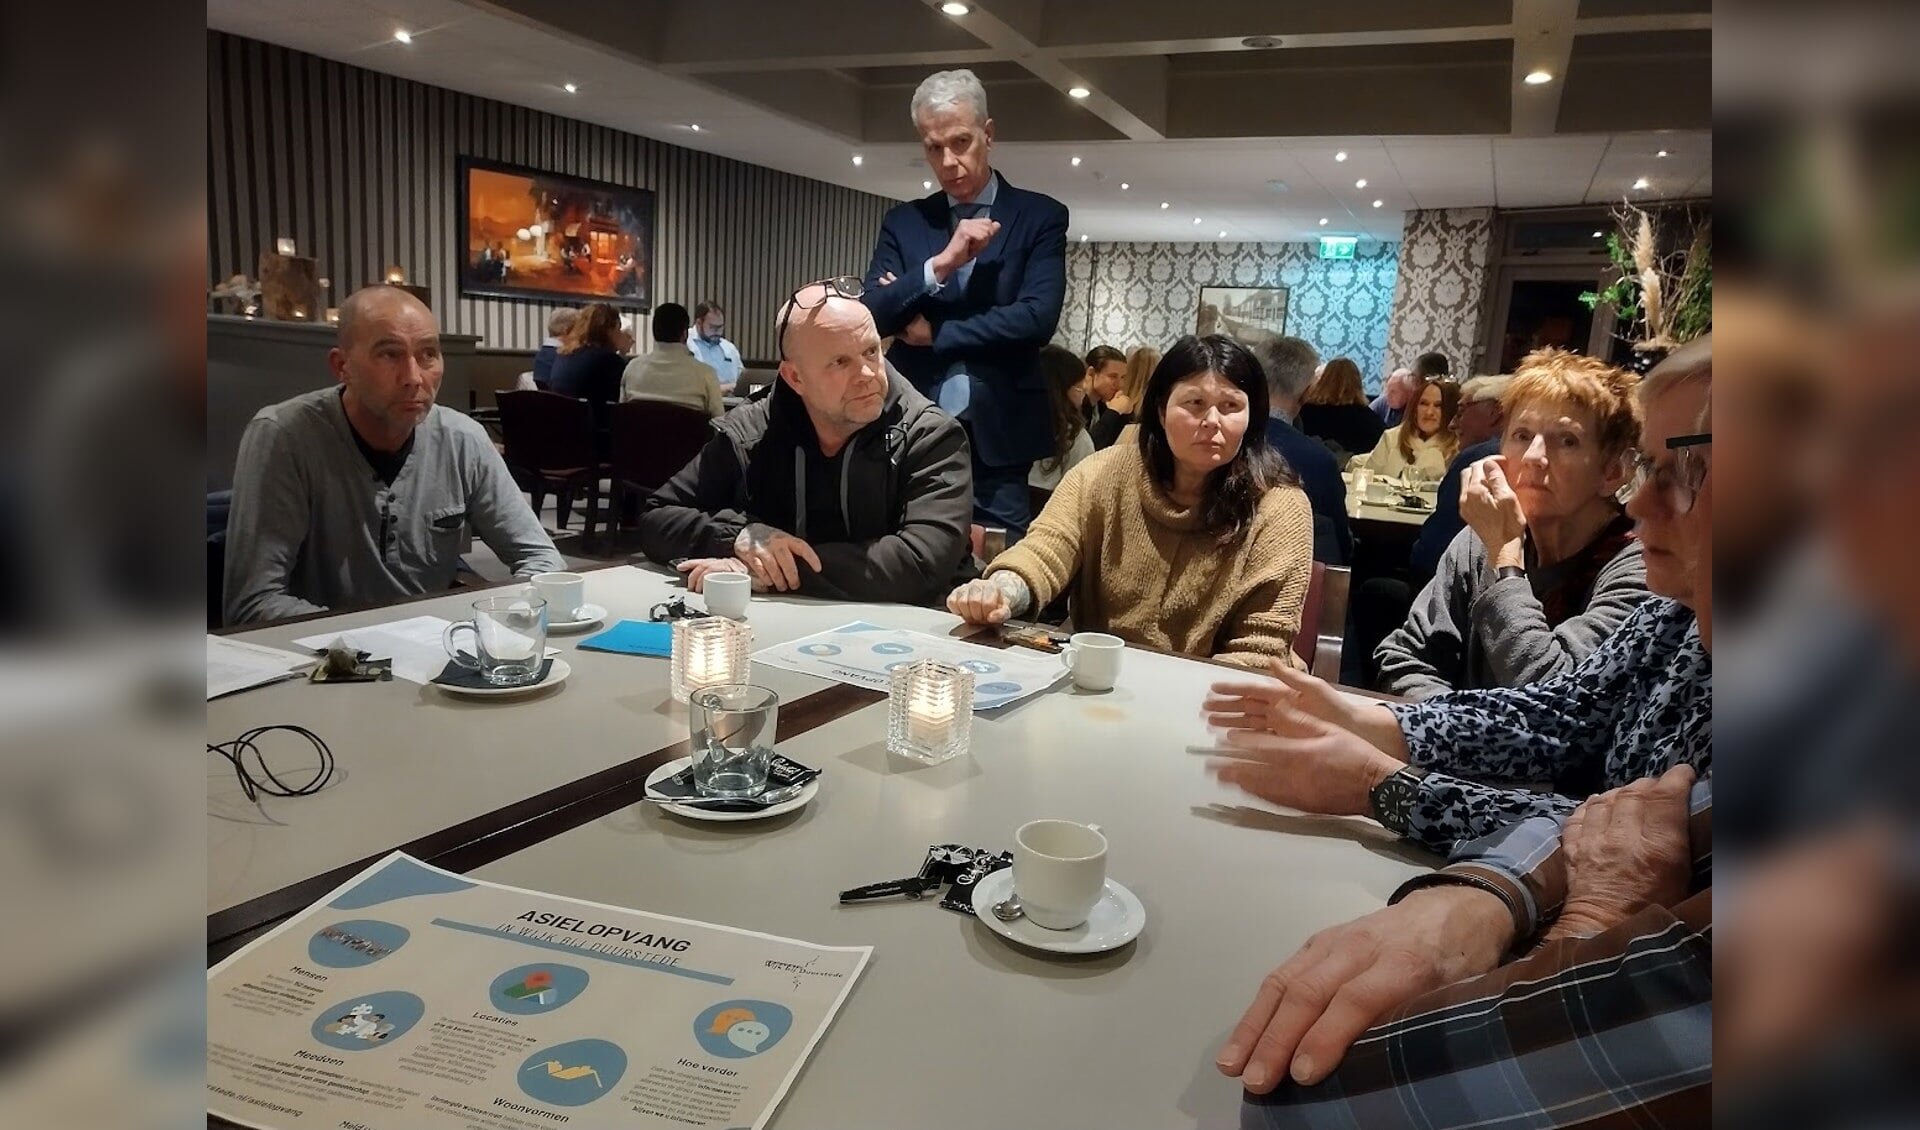 Inwoners uit Langbroek in gesprek over asielopvang, met staand wethouder Hans Buijtelaar (VVD)